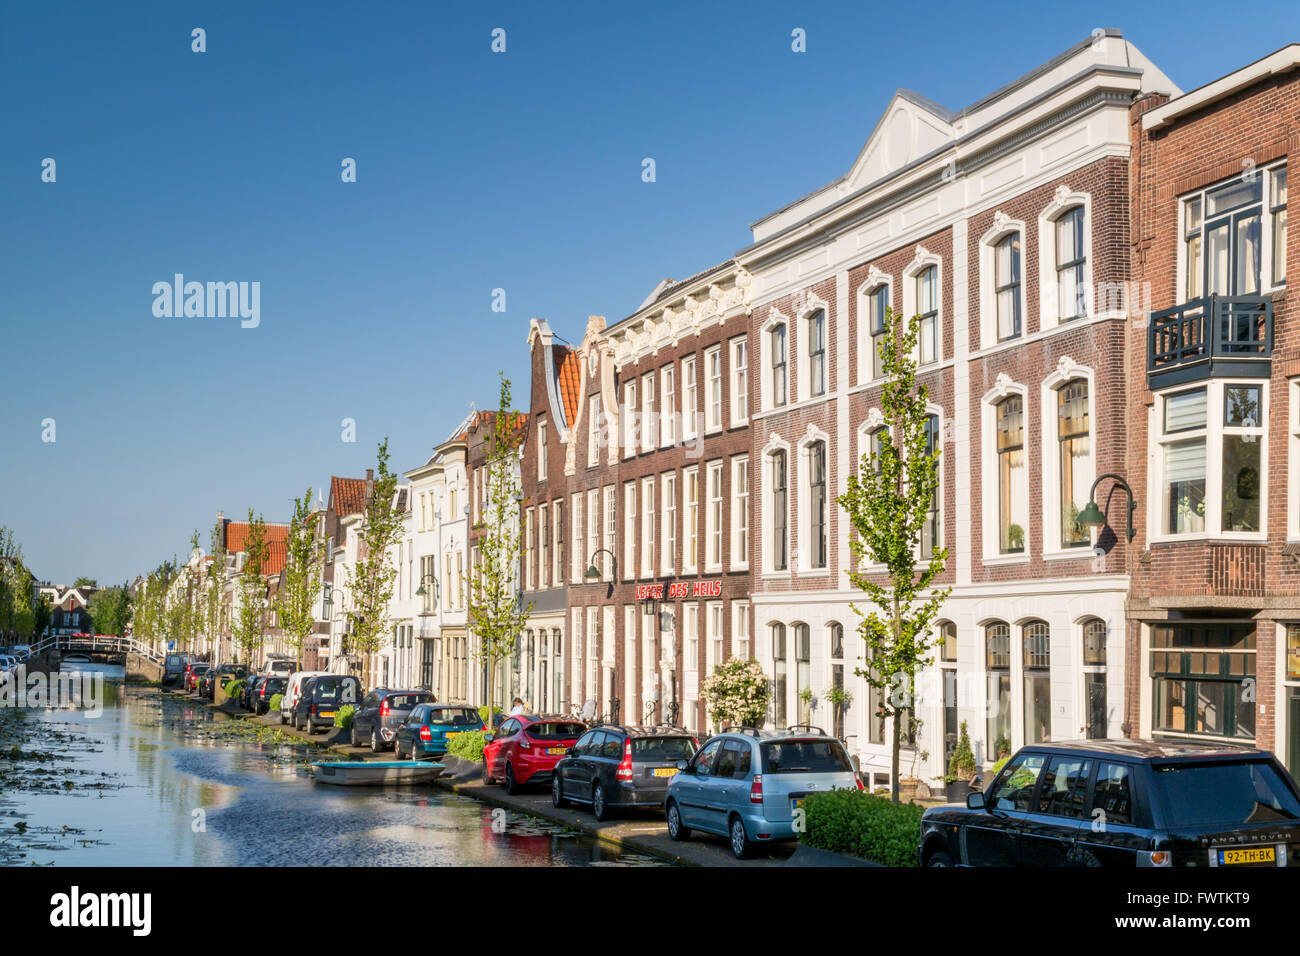 Las fachadas de las casas antiguas, Turfmarkt canal en la ciudad de Eindhoven, Países Bajos Foto de stock